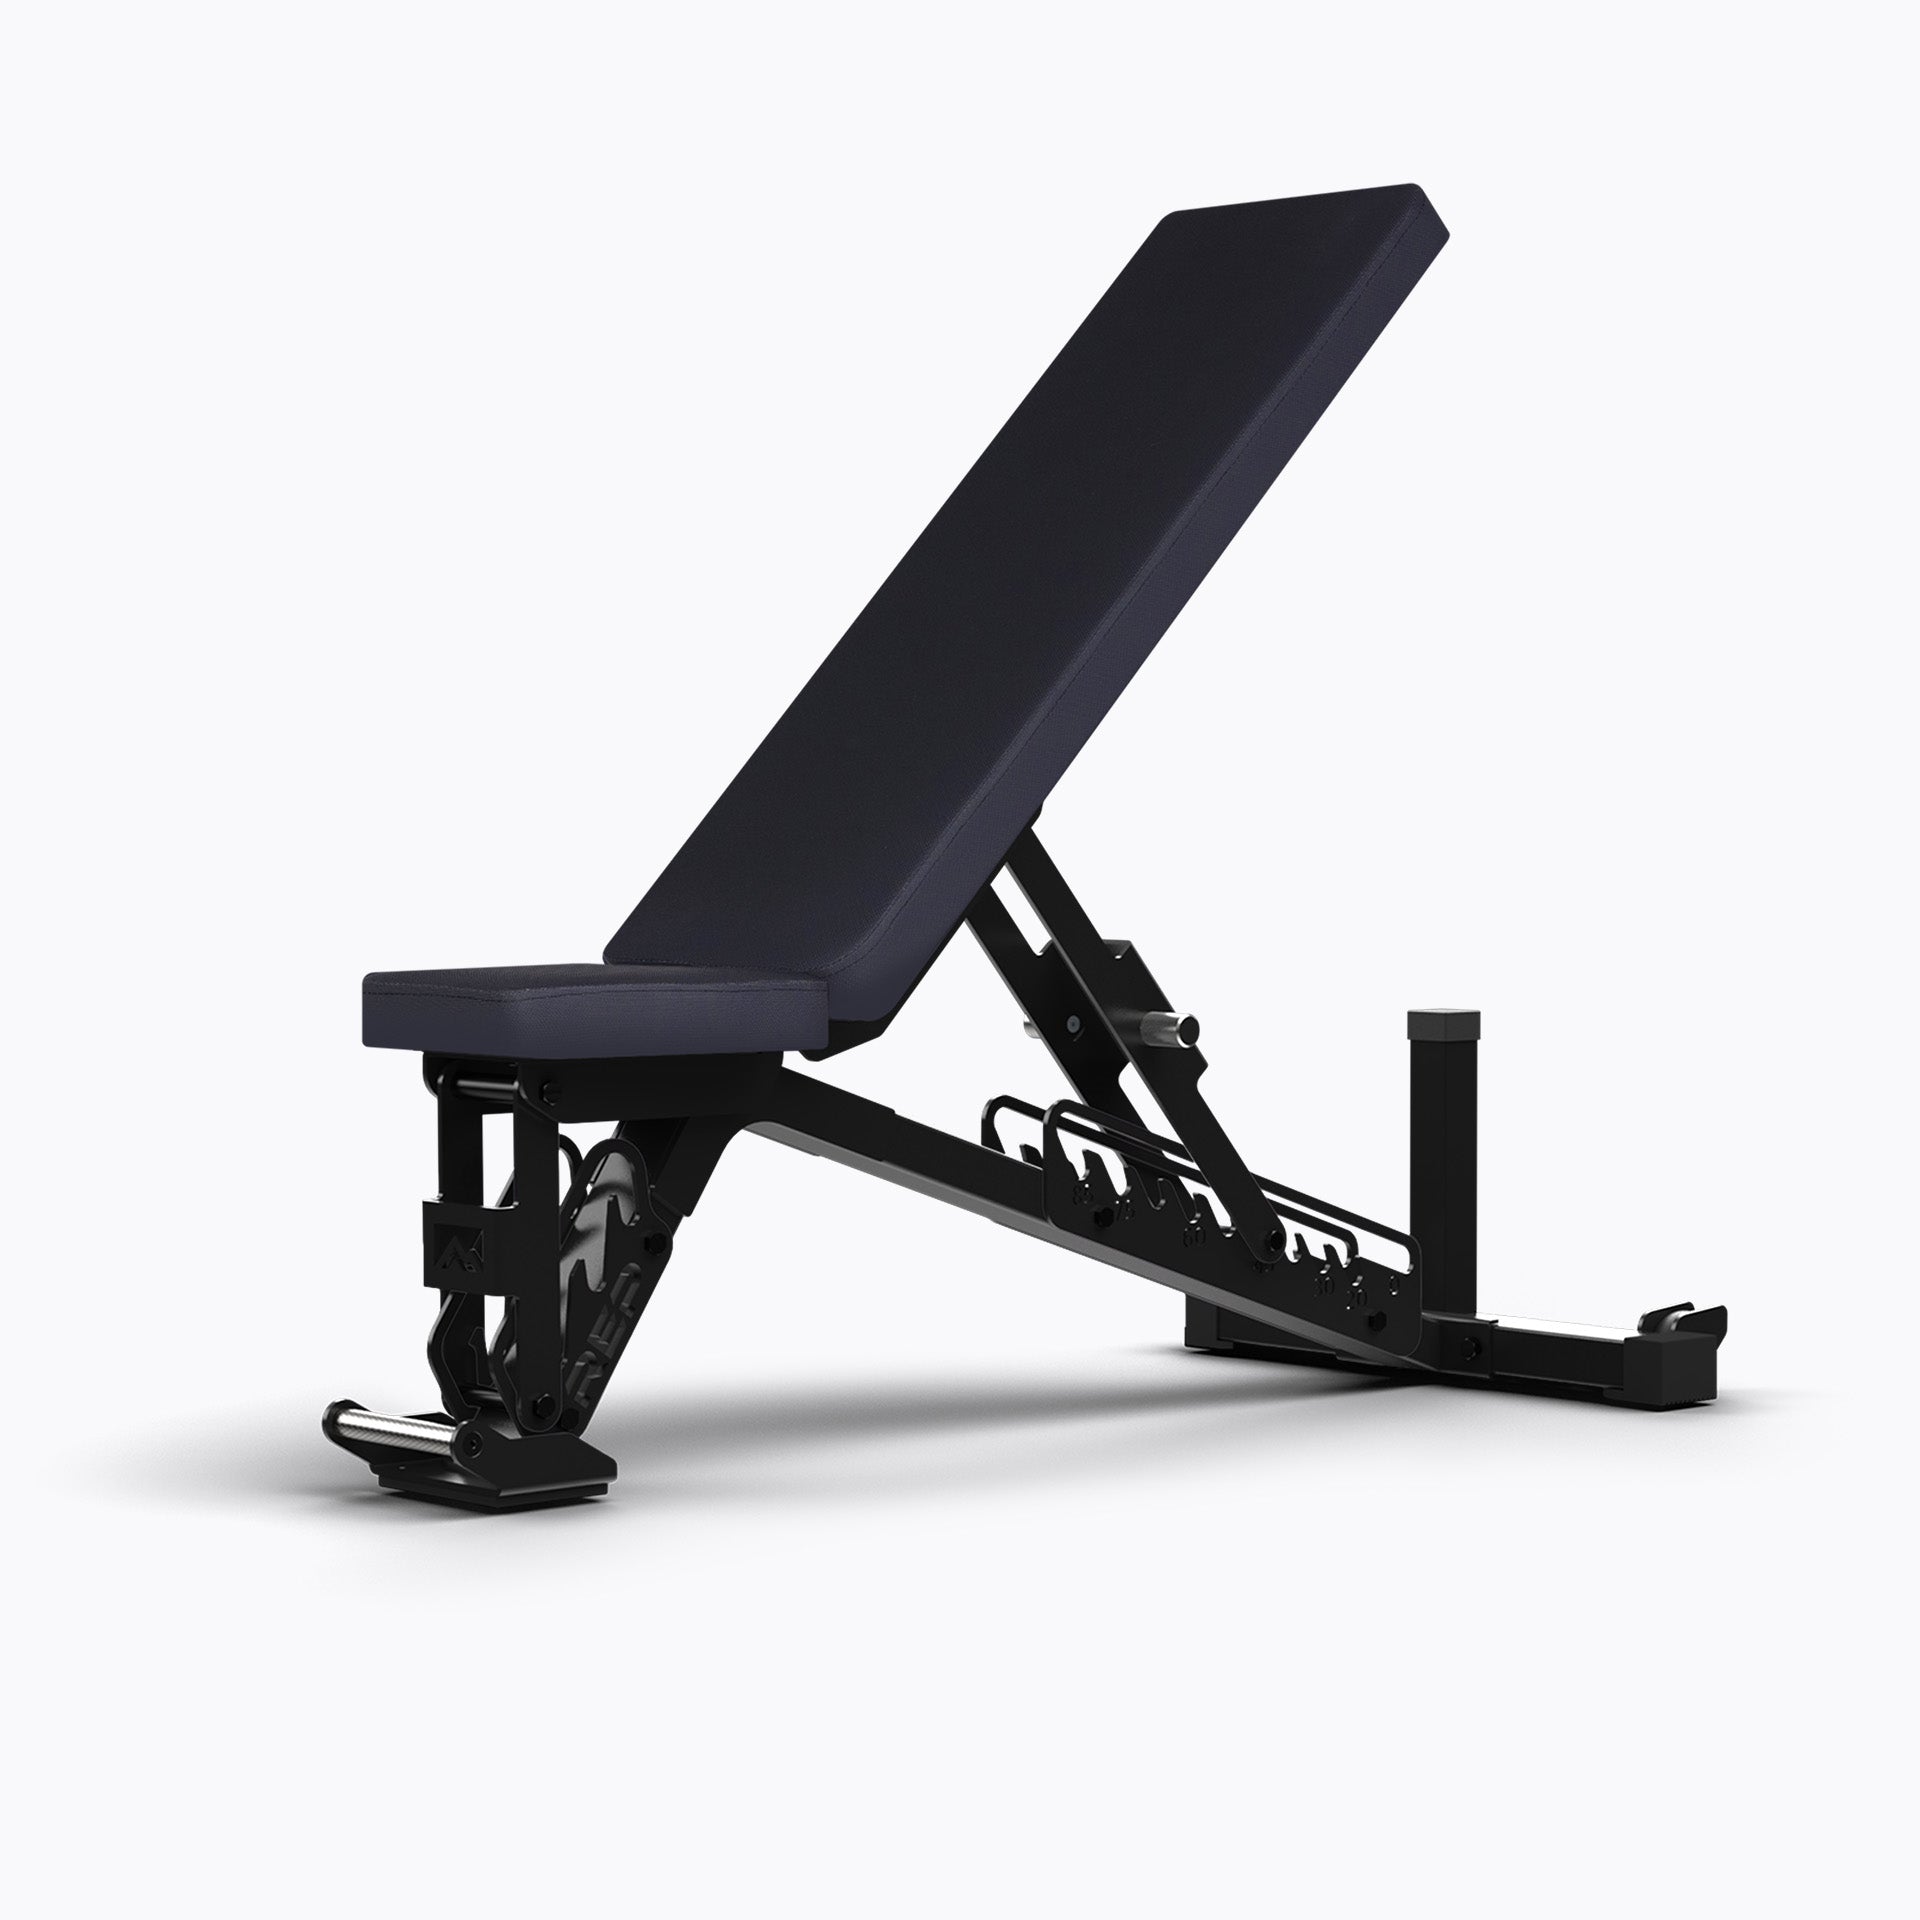 Metallic Black AB-5200 2.0 bench